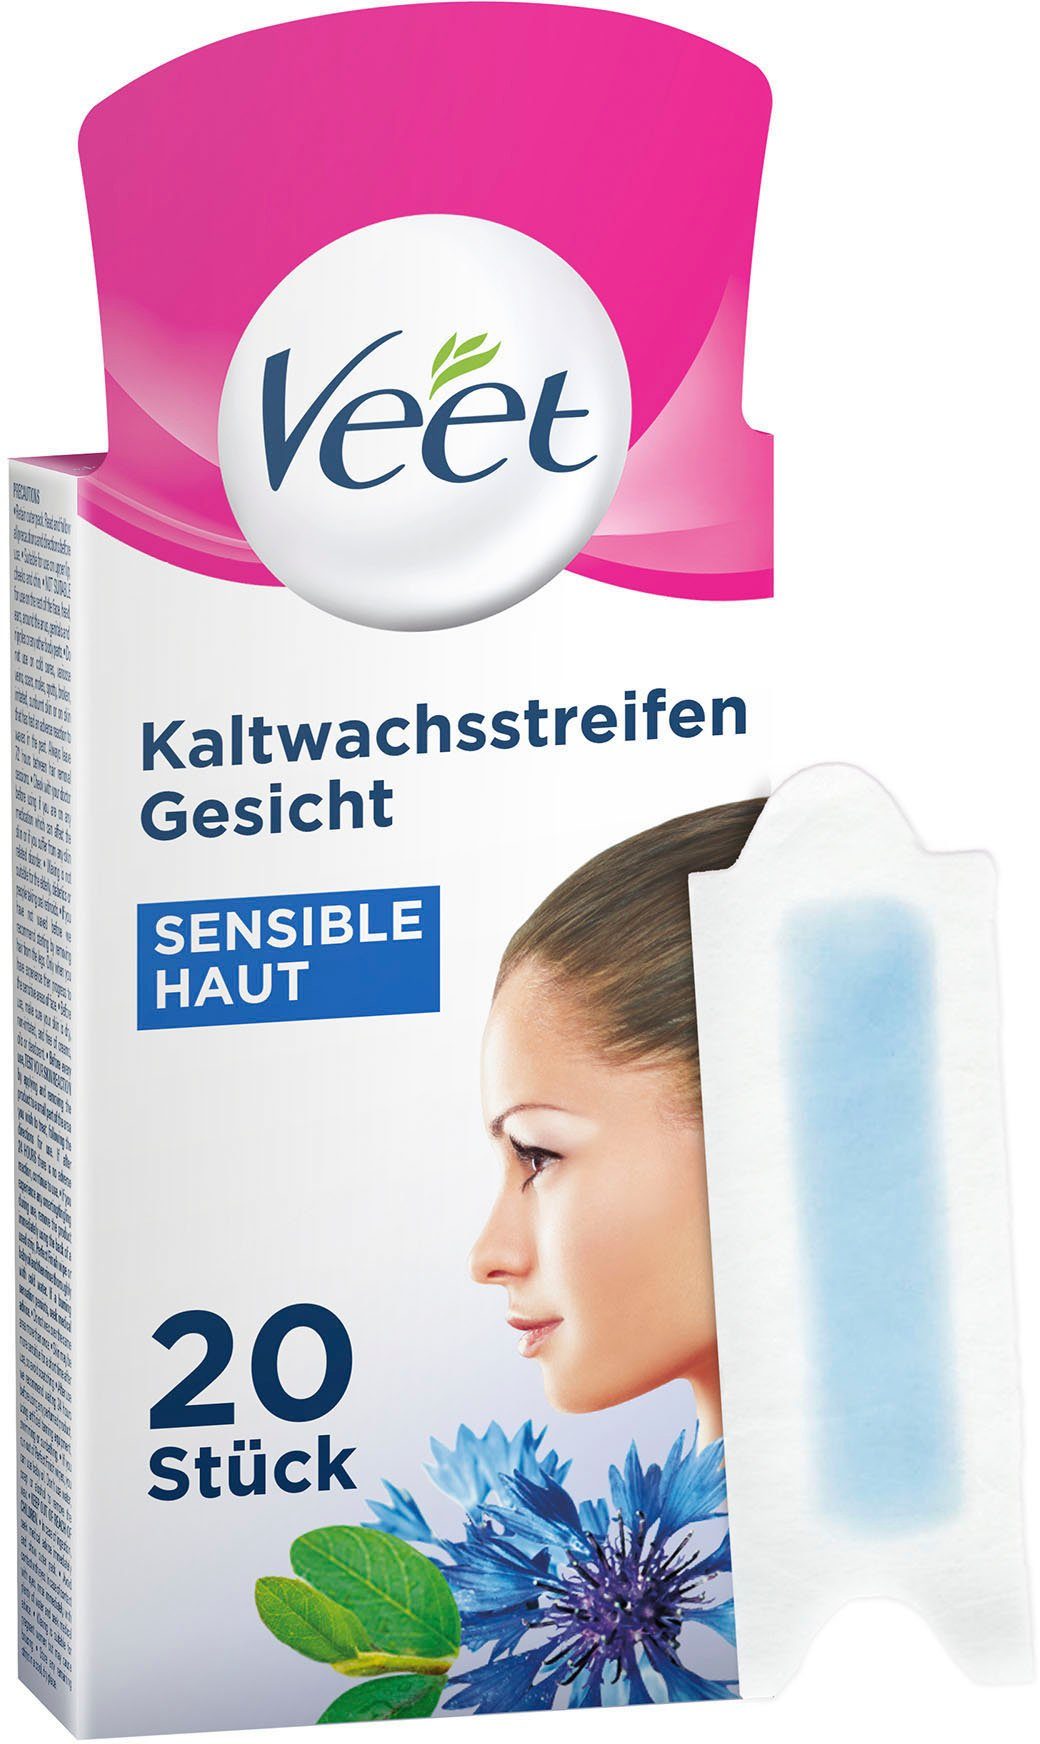 Veet Kaltwachsstreifen »Easy-Gelwax Gesicht«, 20 Stück, für sensible Haut  online kaufen | OTTO